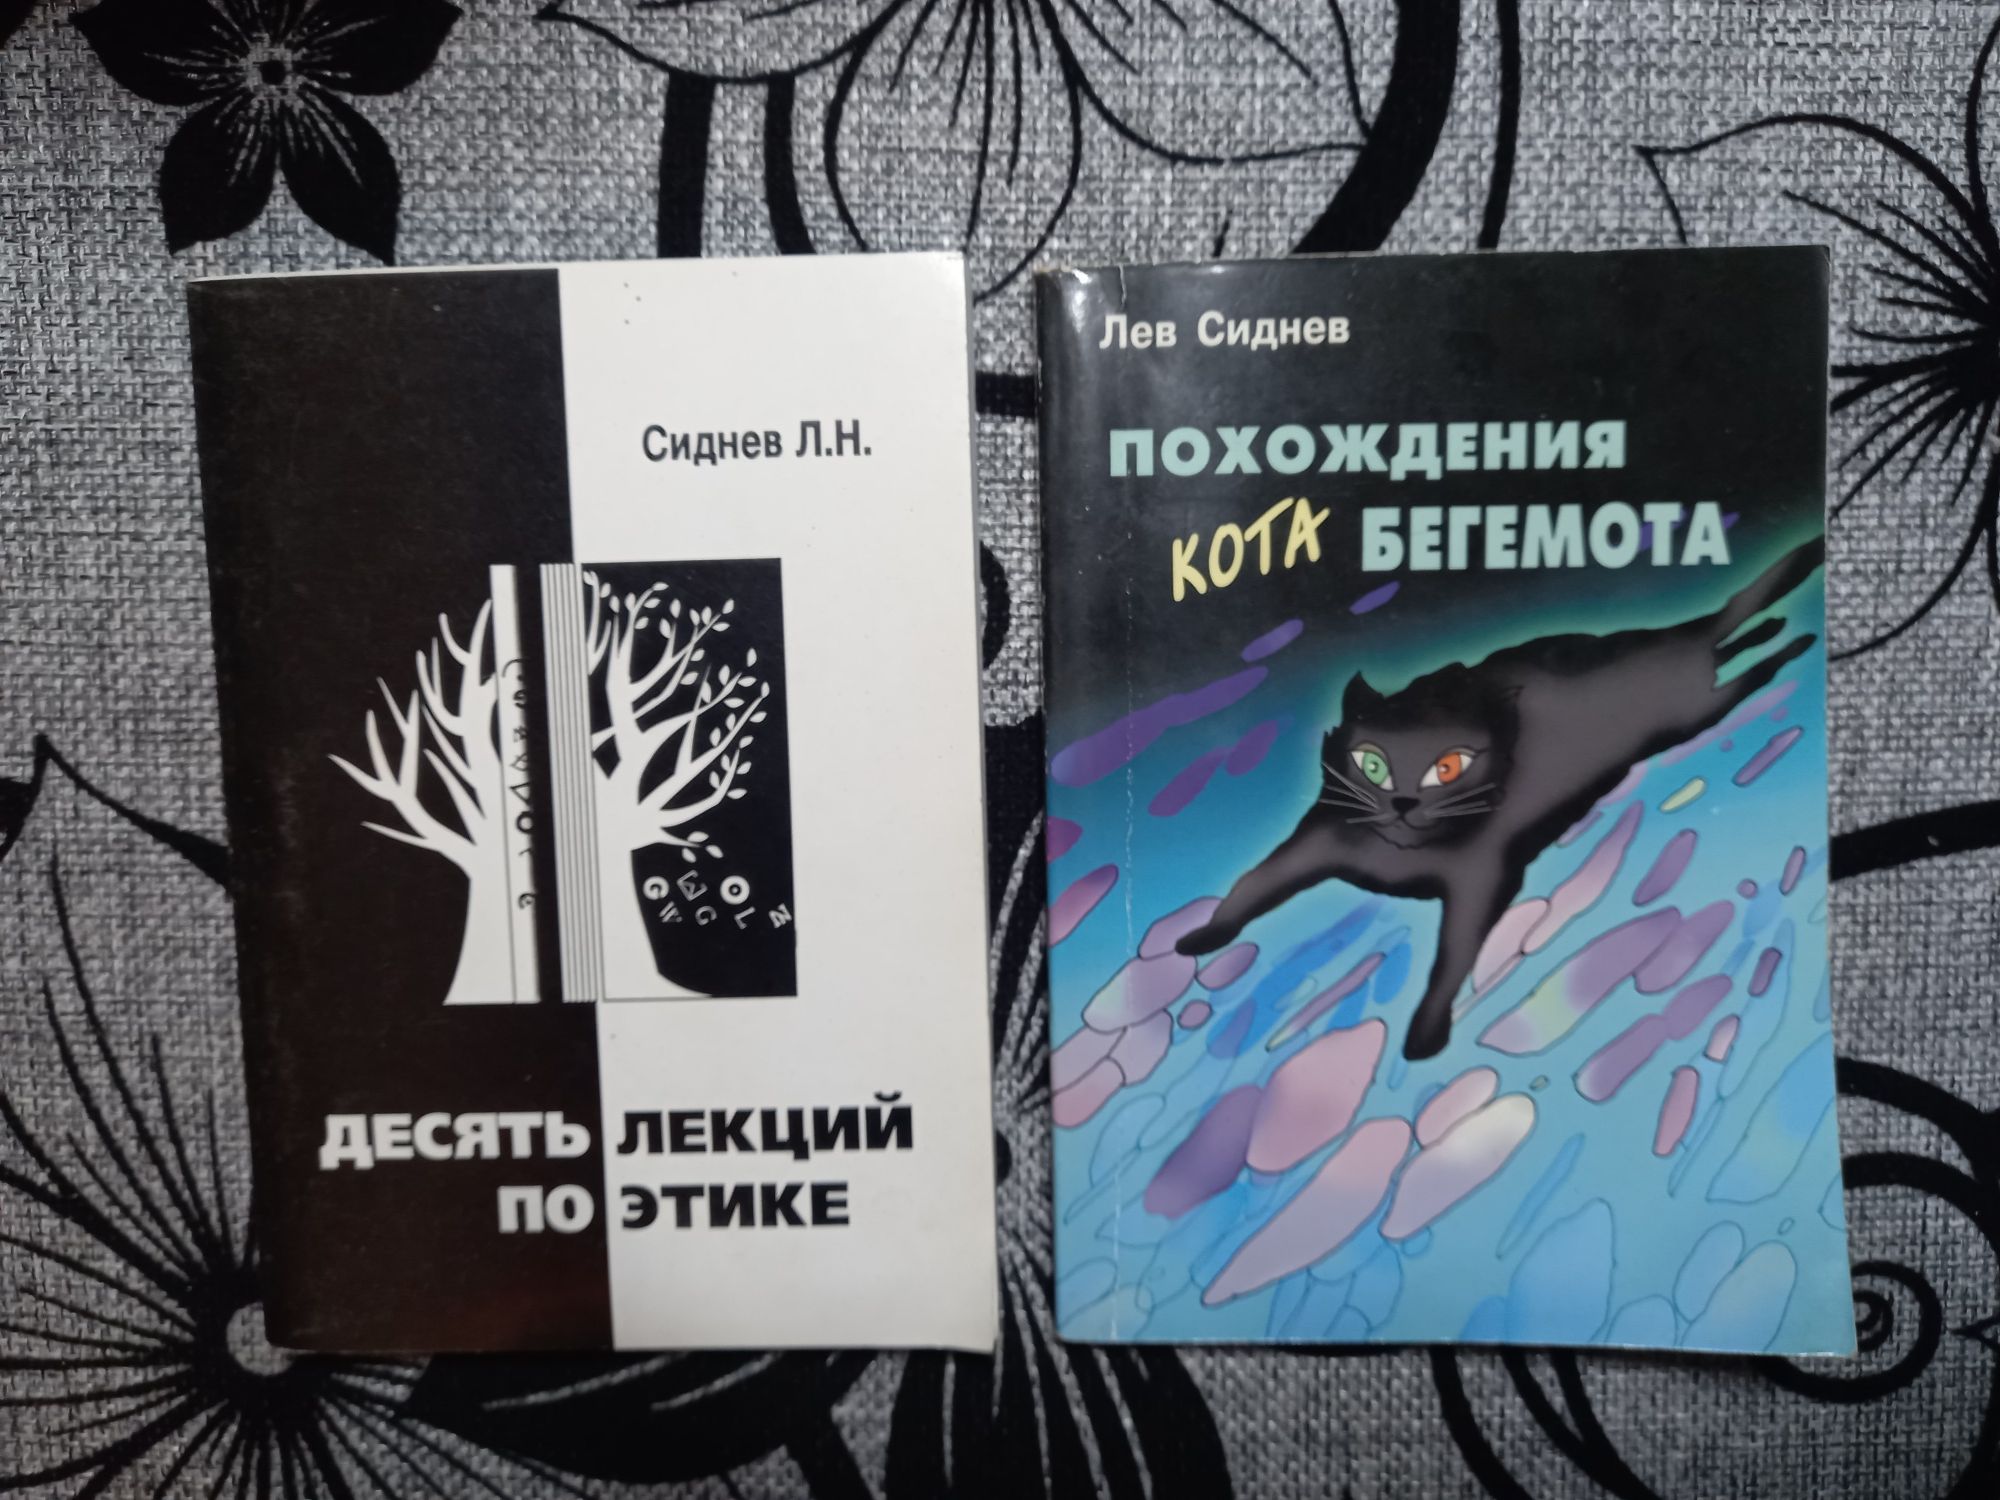 Книга Лев Сиднев "Похождения кота бегемота", "Десять лекций по этике"